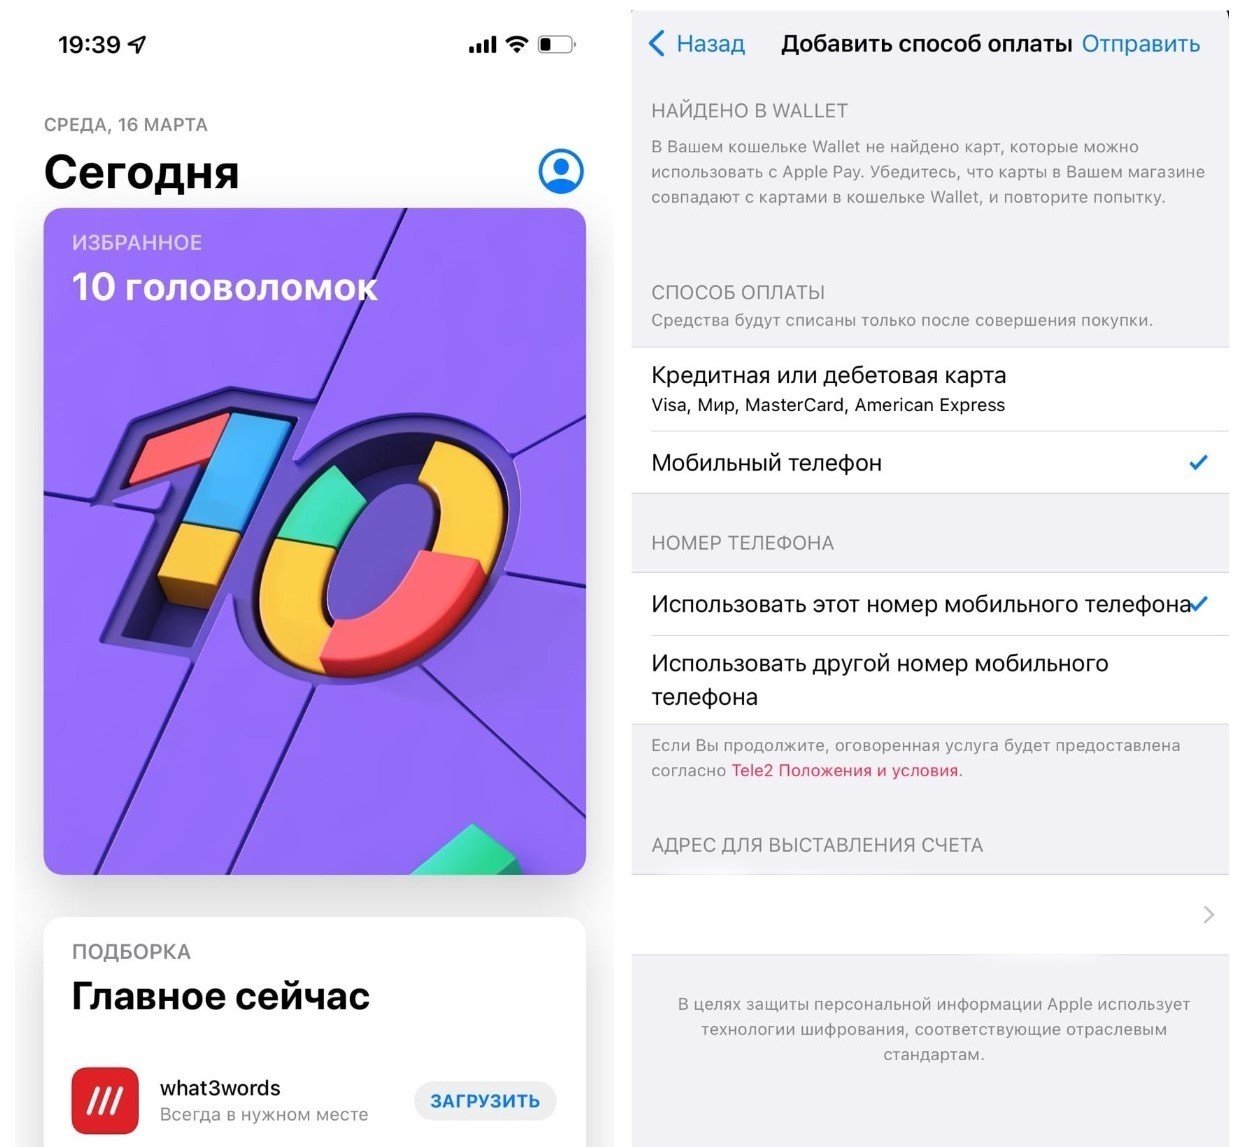 Как оплачивать покупки в App Store из России